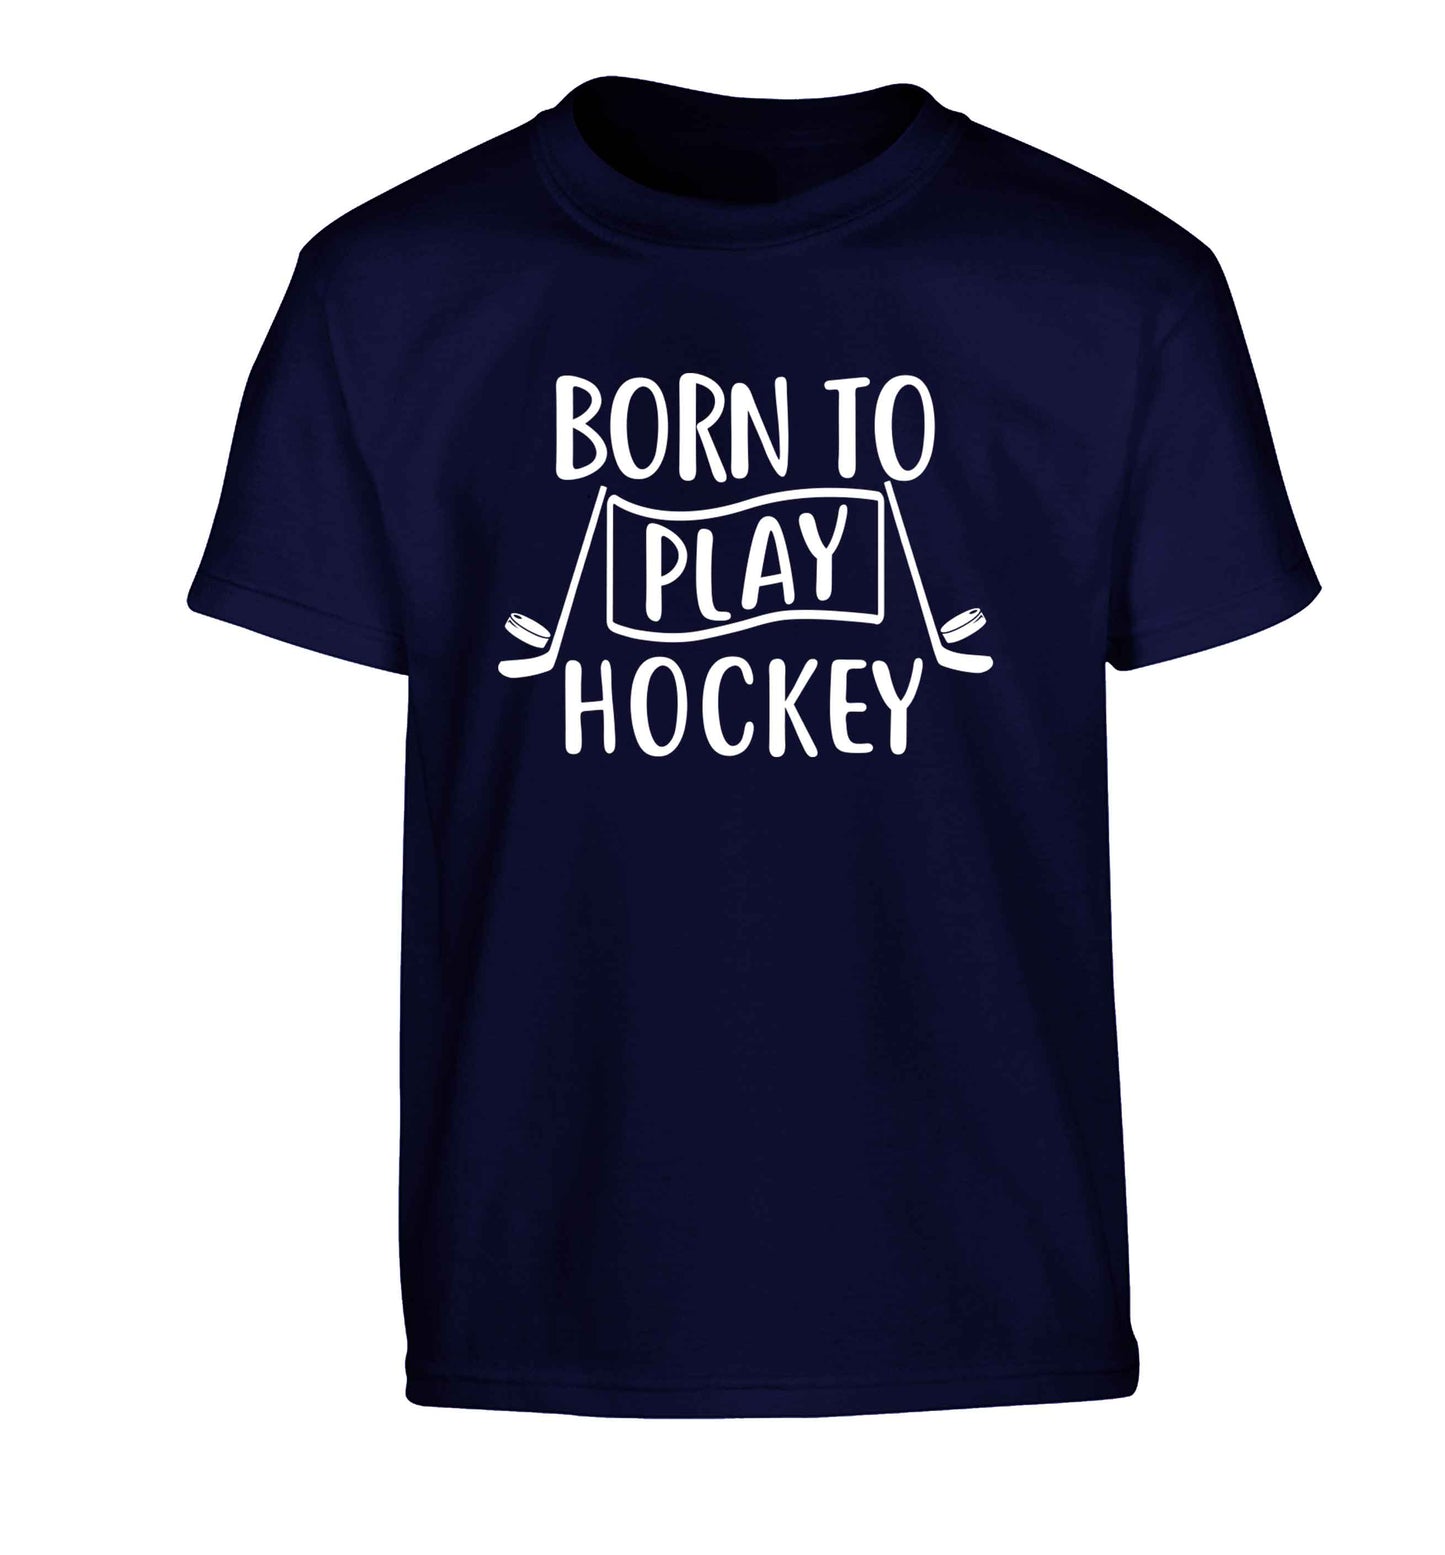 Born to play hockey Children's navy Tshirt 12-13 Years